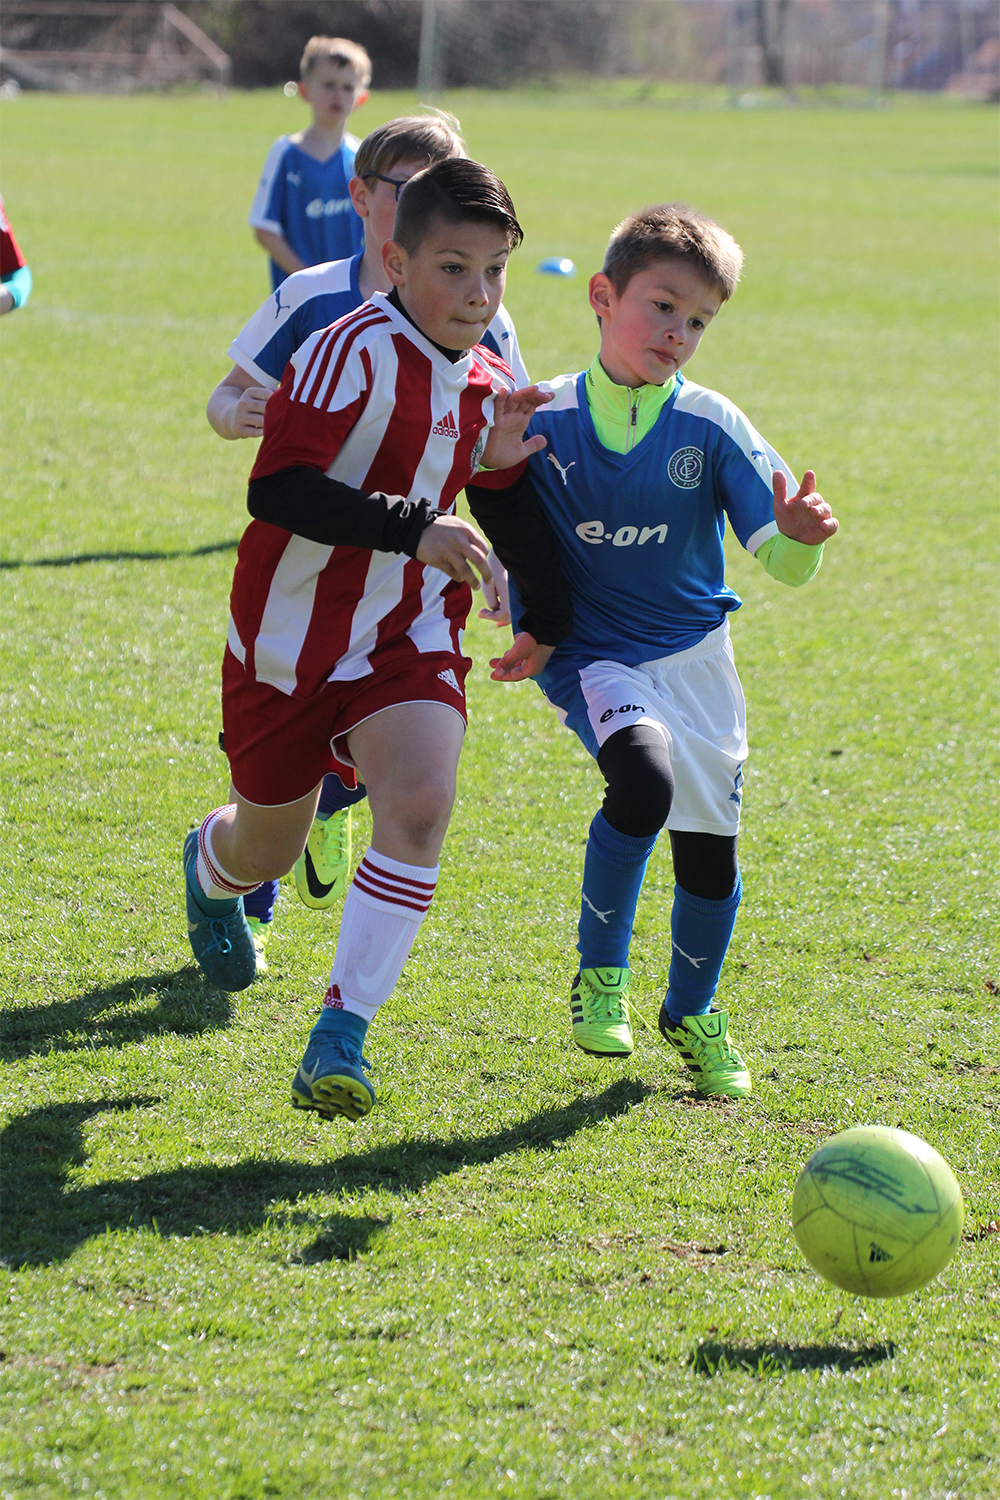 Ein Spiel der Juniorenmannschaft des DFC, bei dem die jungen Kicker vollen Einsatz zeigen. Foto: © Peer Gröning